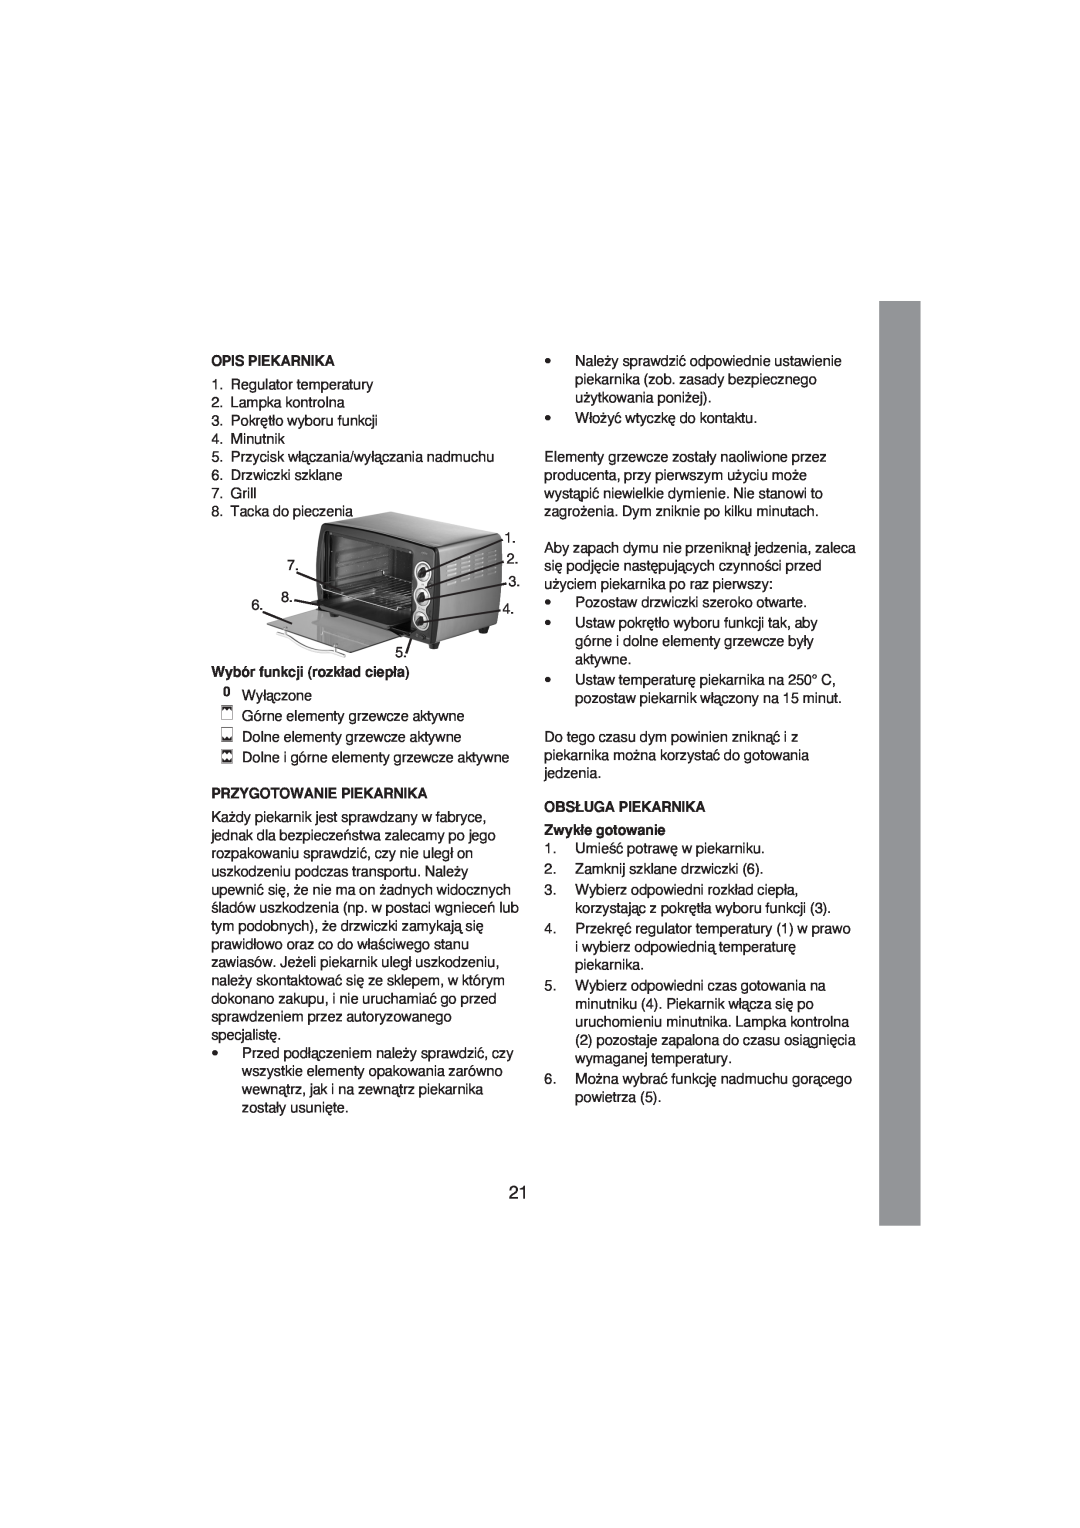 Melissa 251-003/004 manual Opis Piekarnika, Wybór funkcji rozk∏ad ciep∏a, Przygotowanie Piekarnika 